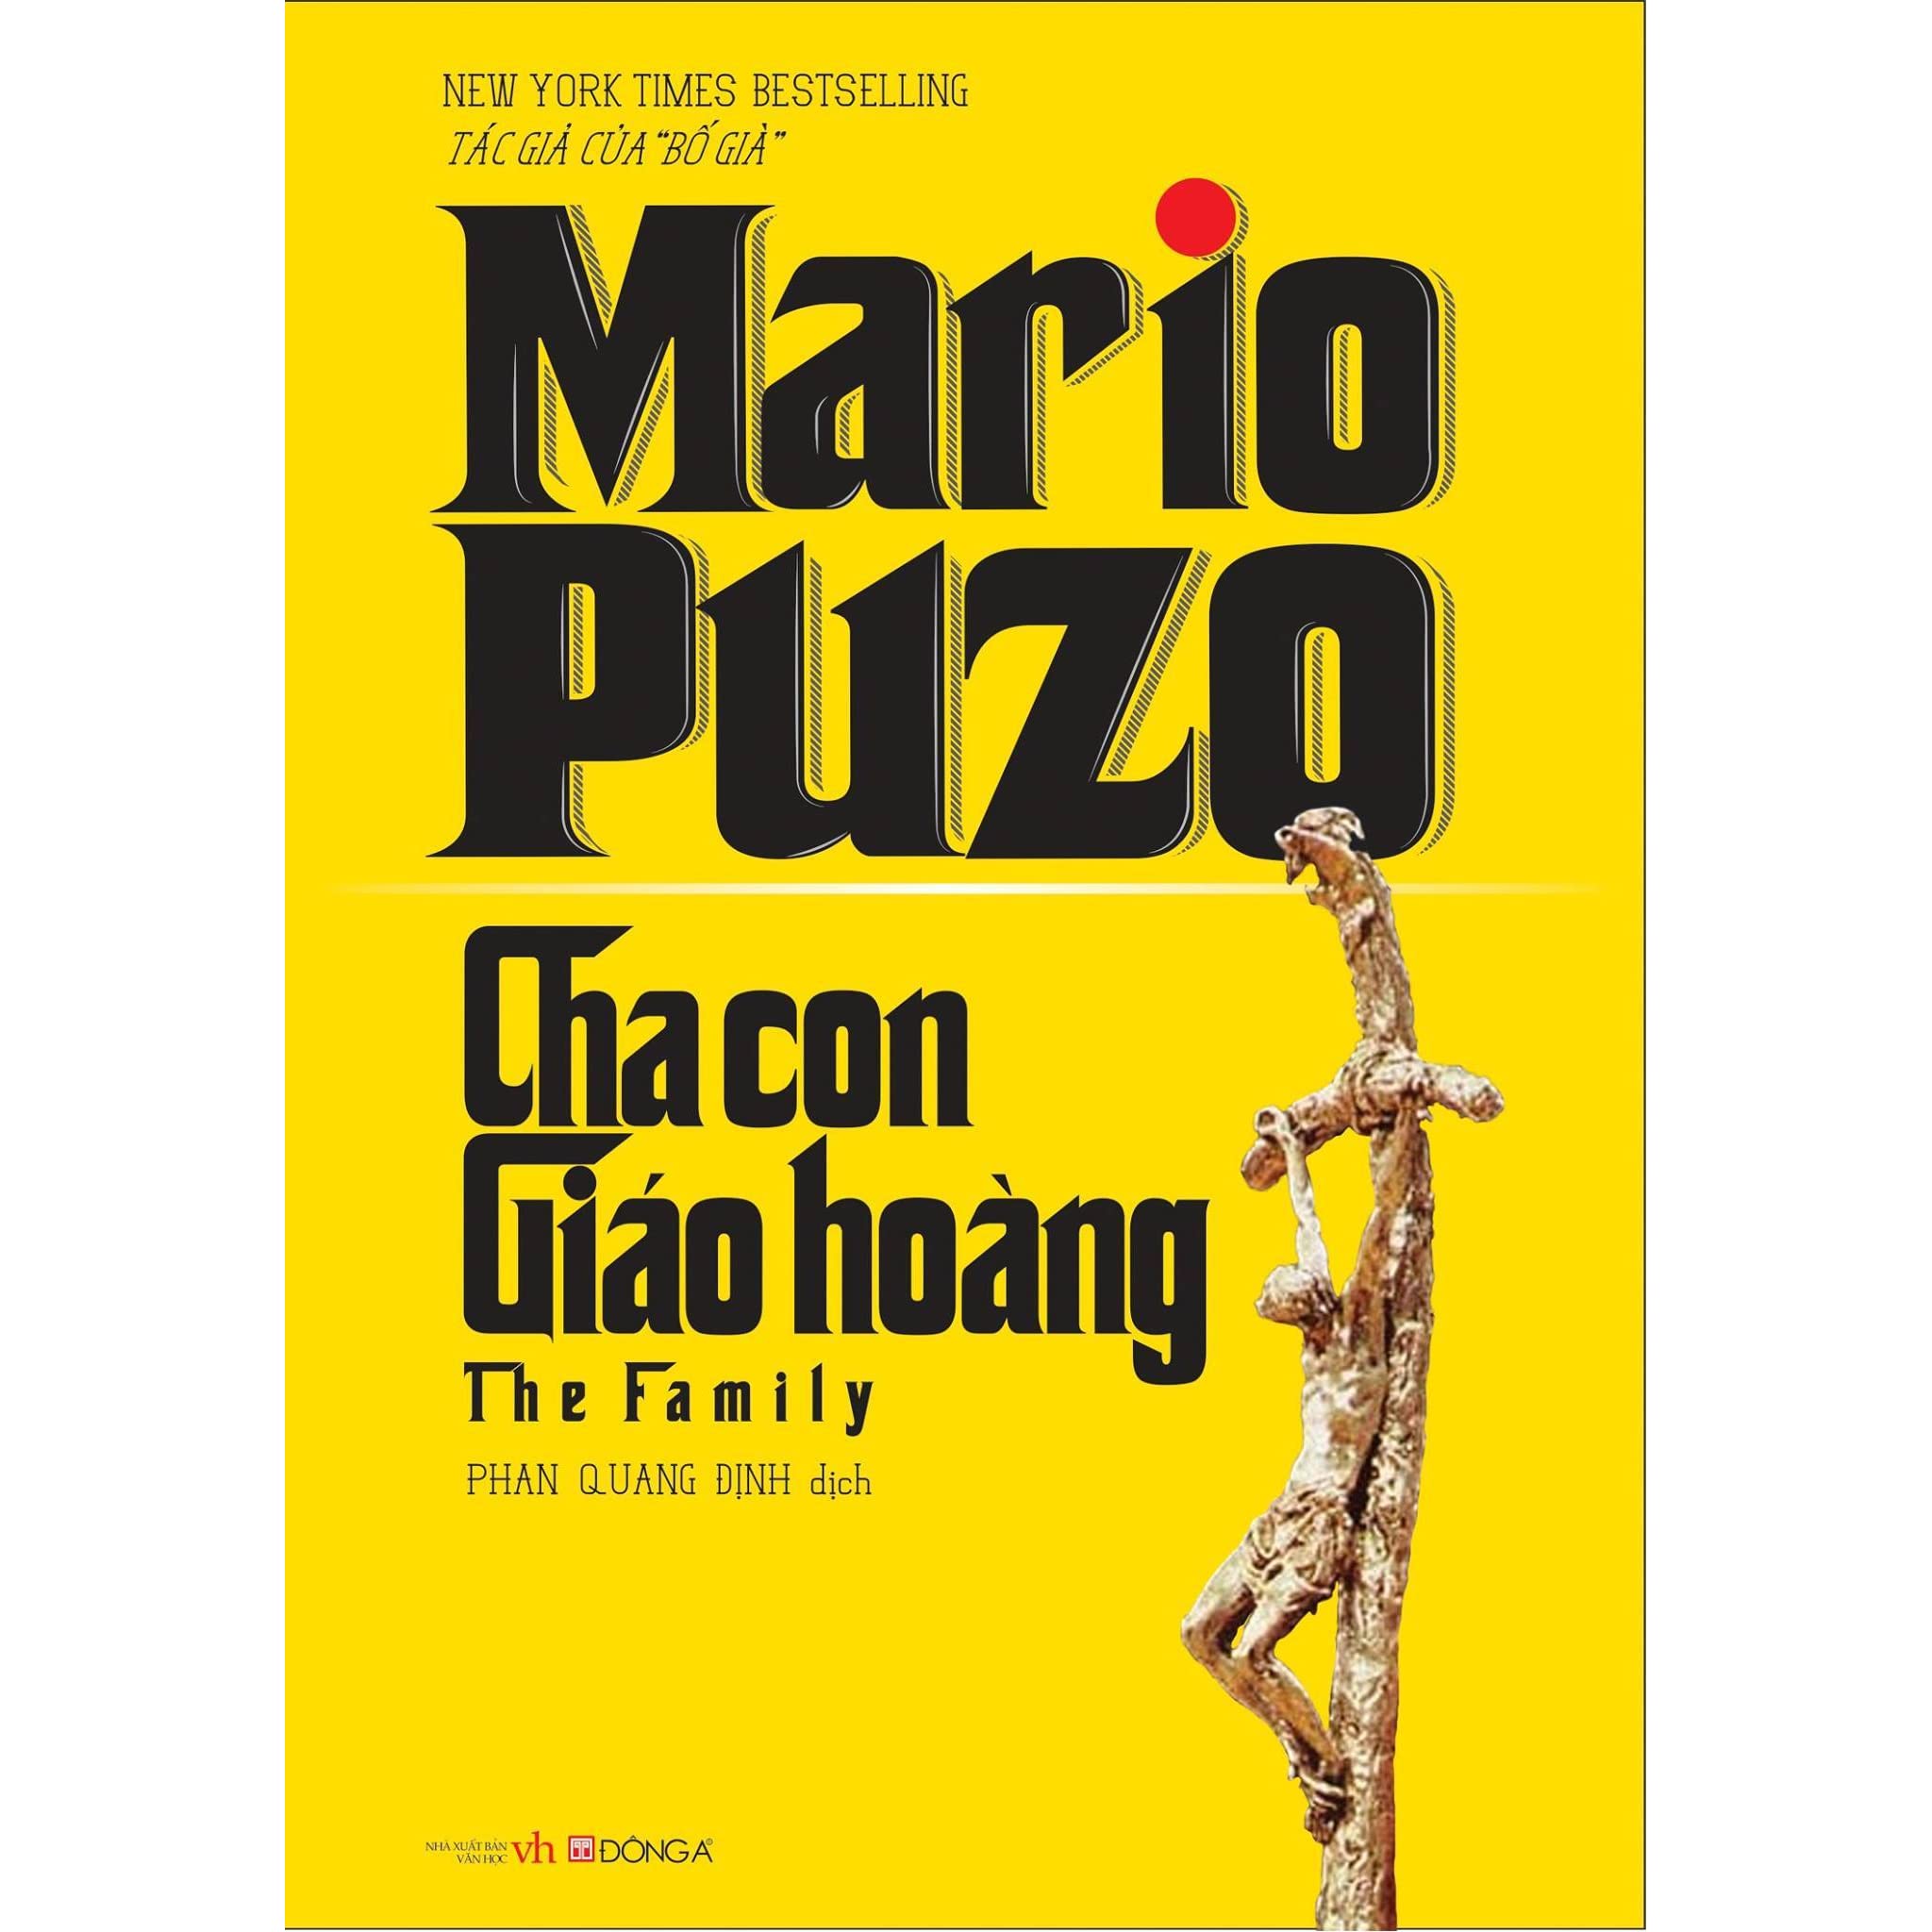 Review sách Cha Con Giáo Hoàng của Tác giả Mario Puzo